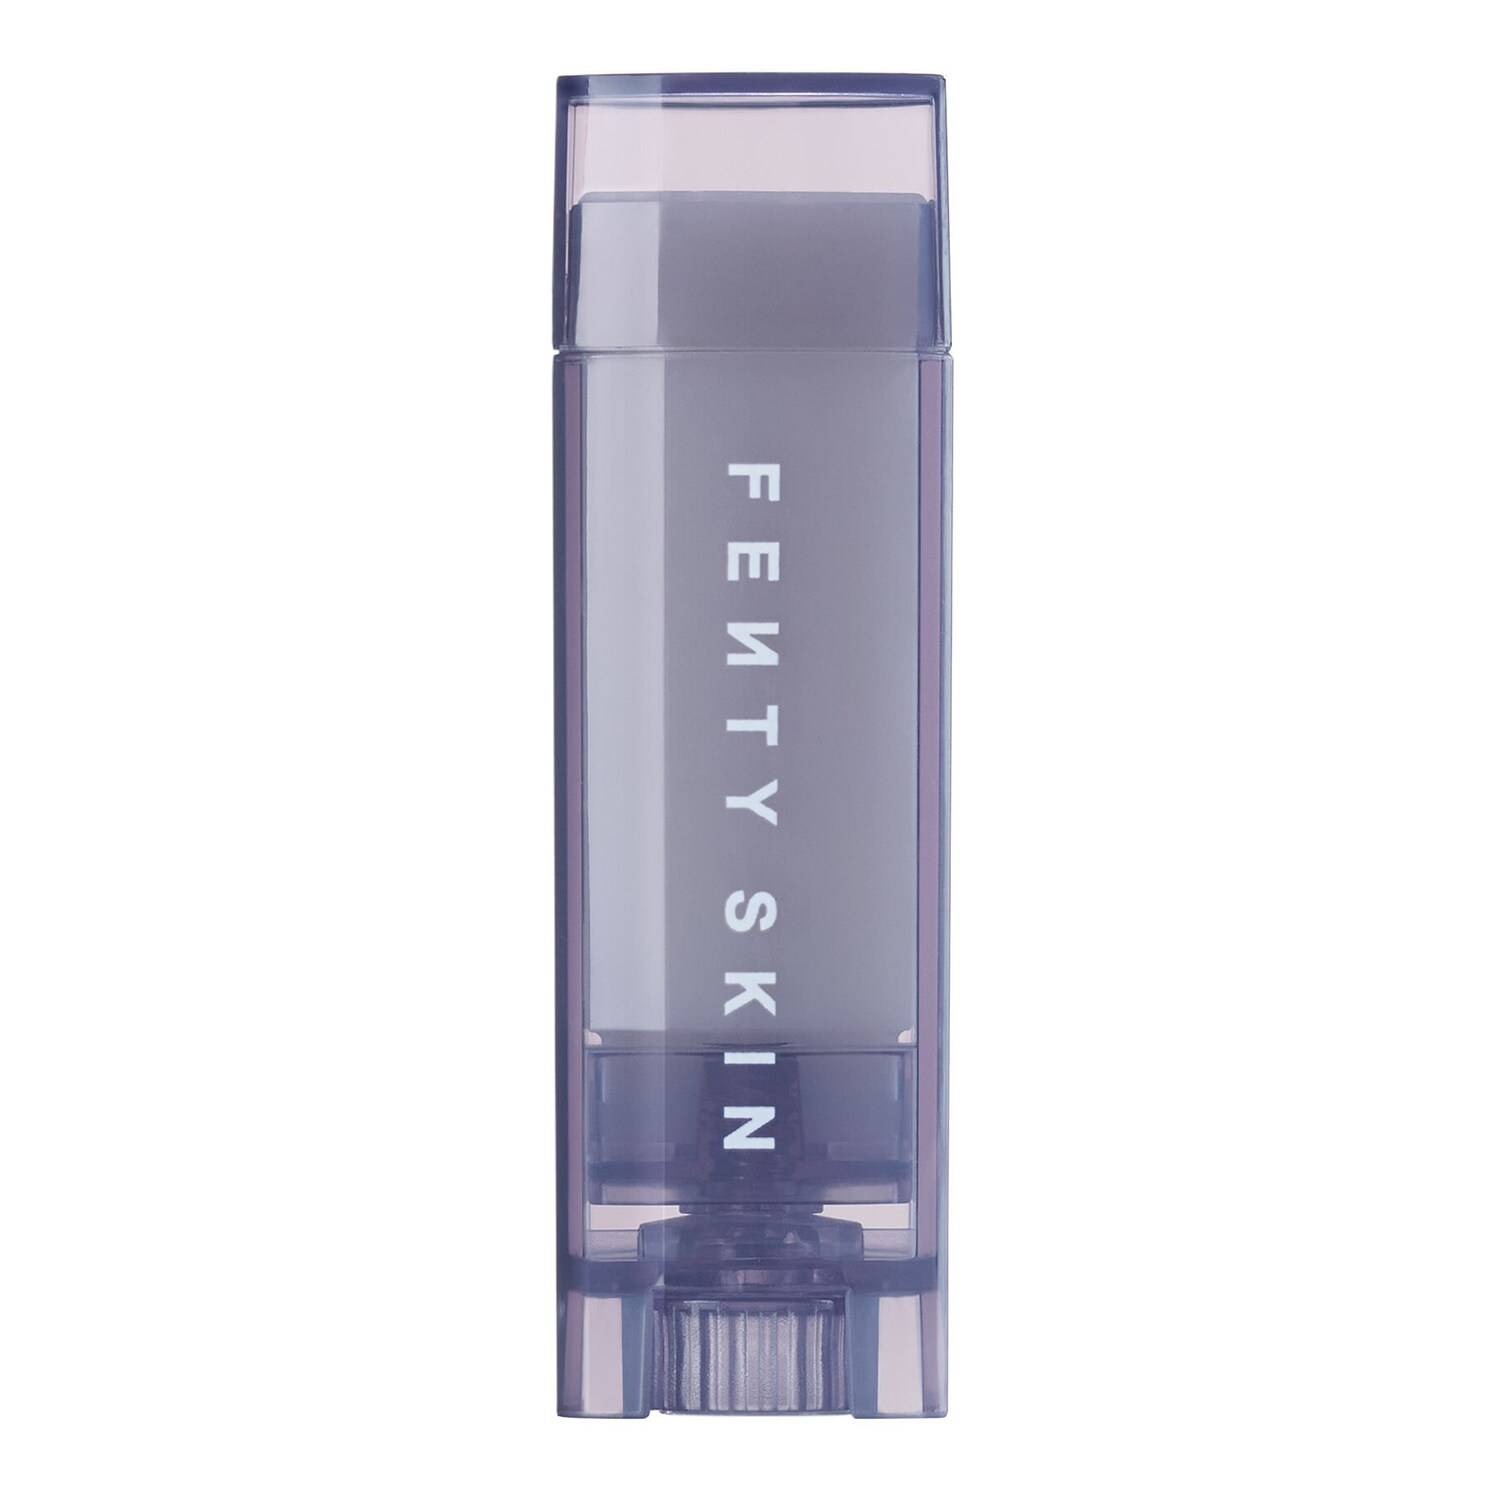 FENTY SKIN Lux Ultra-Hydrating Lip Balm 5g